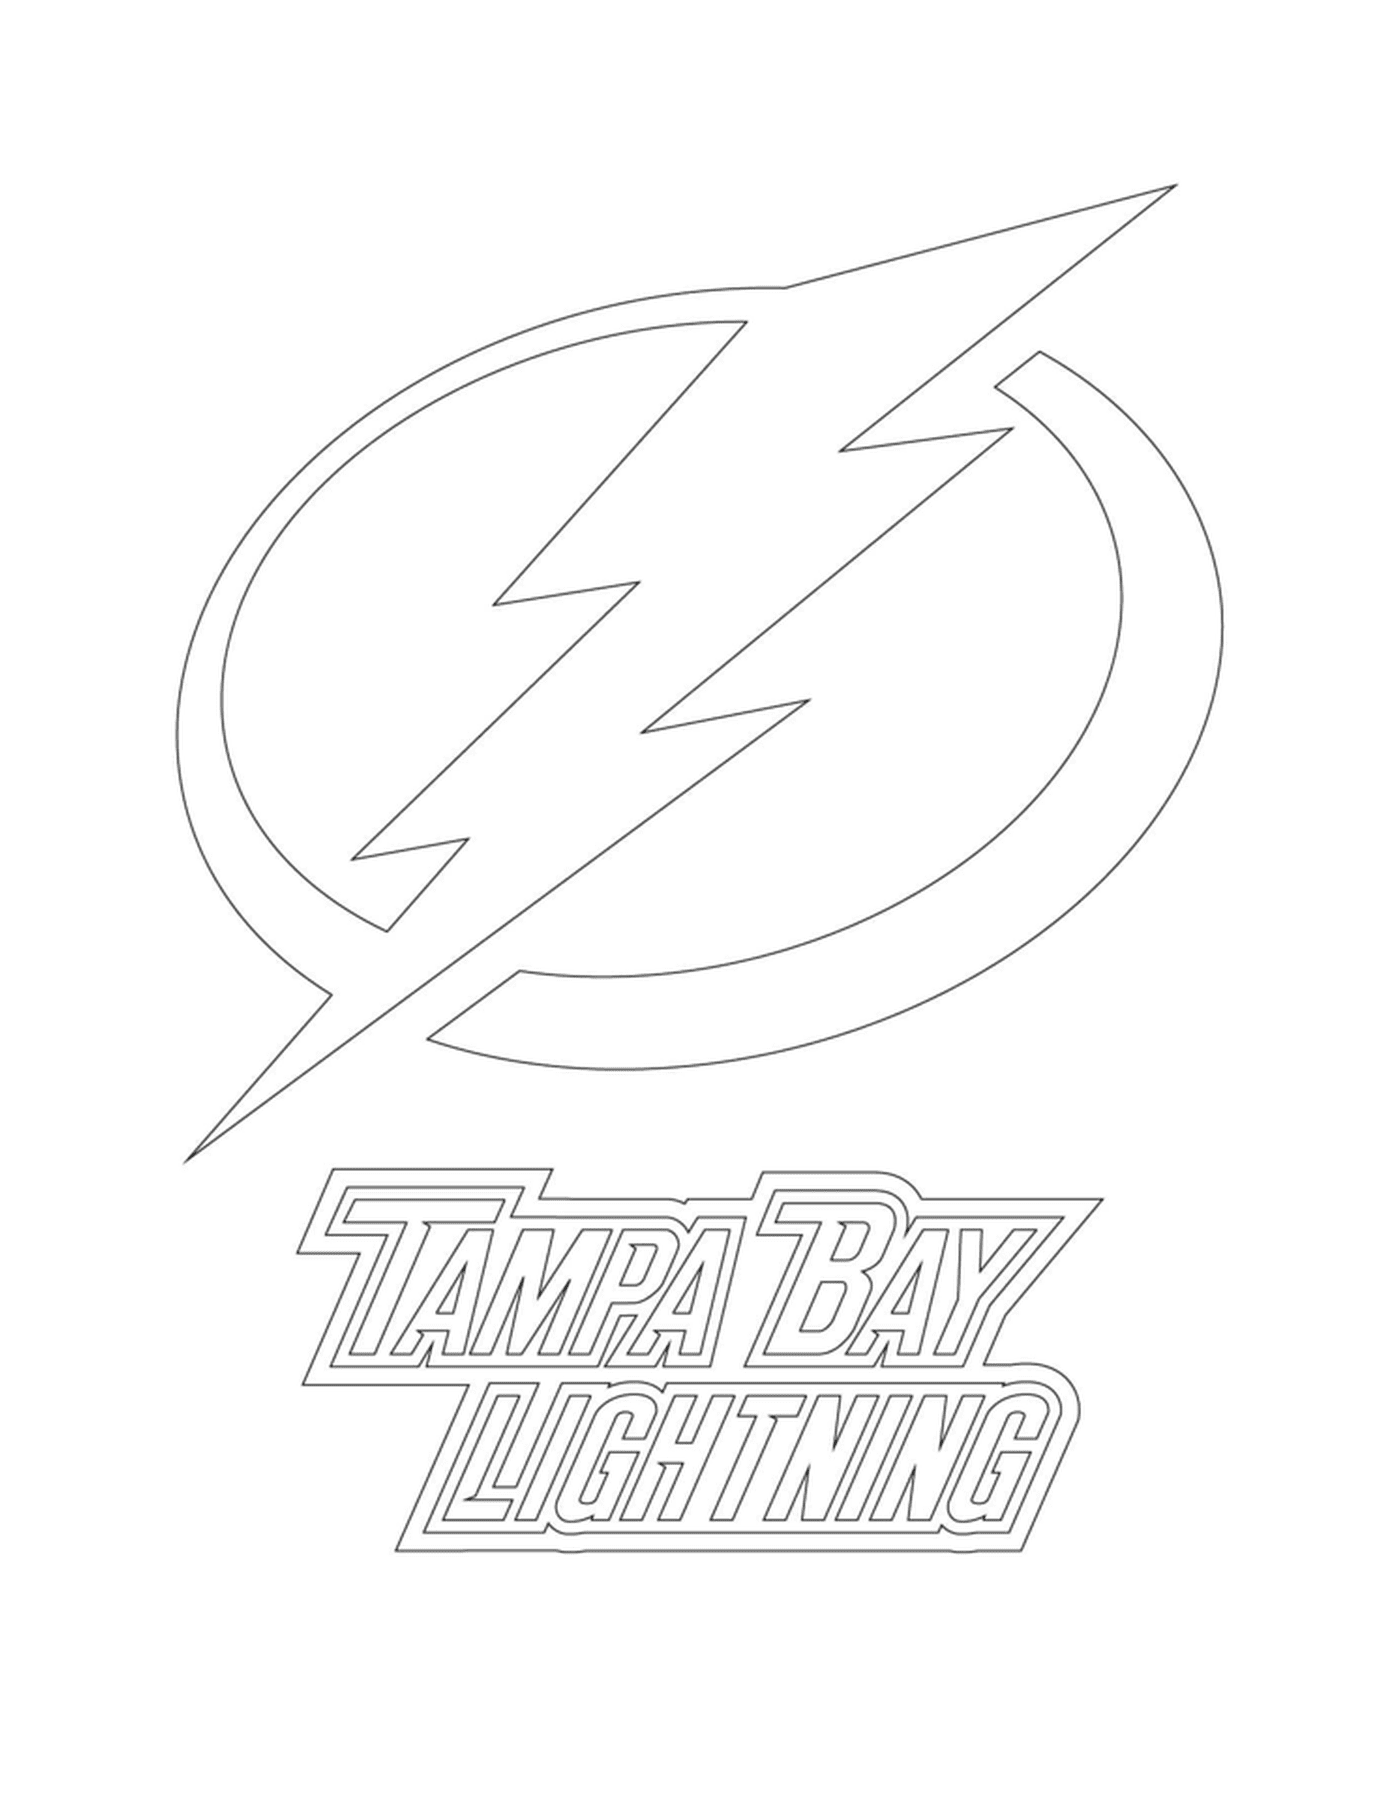  Logo de Tampa Bay Lightning 